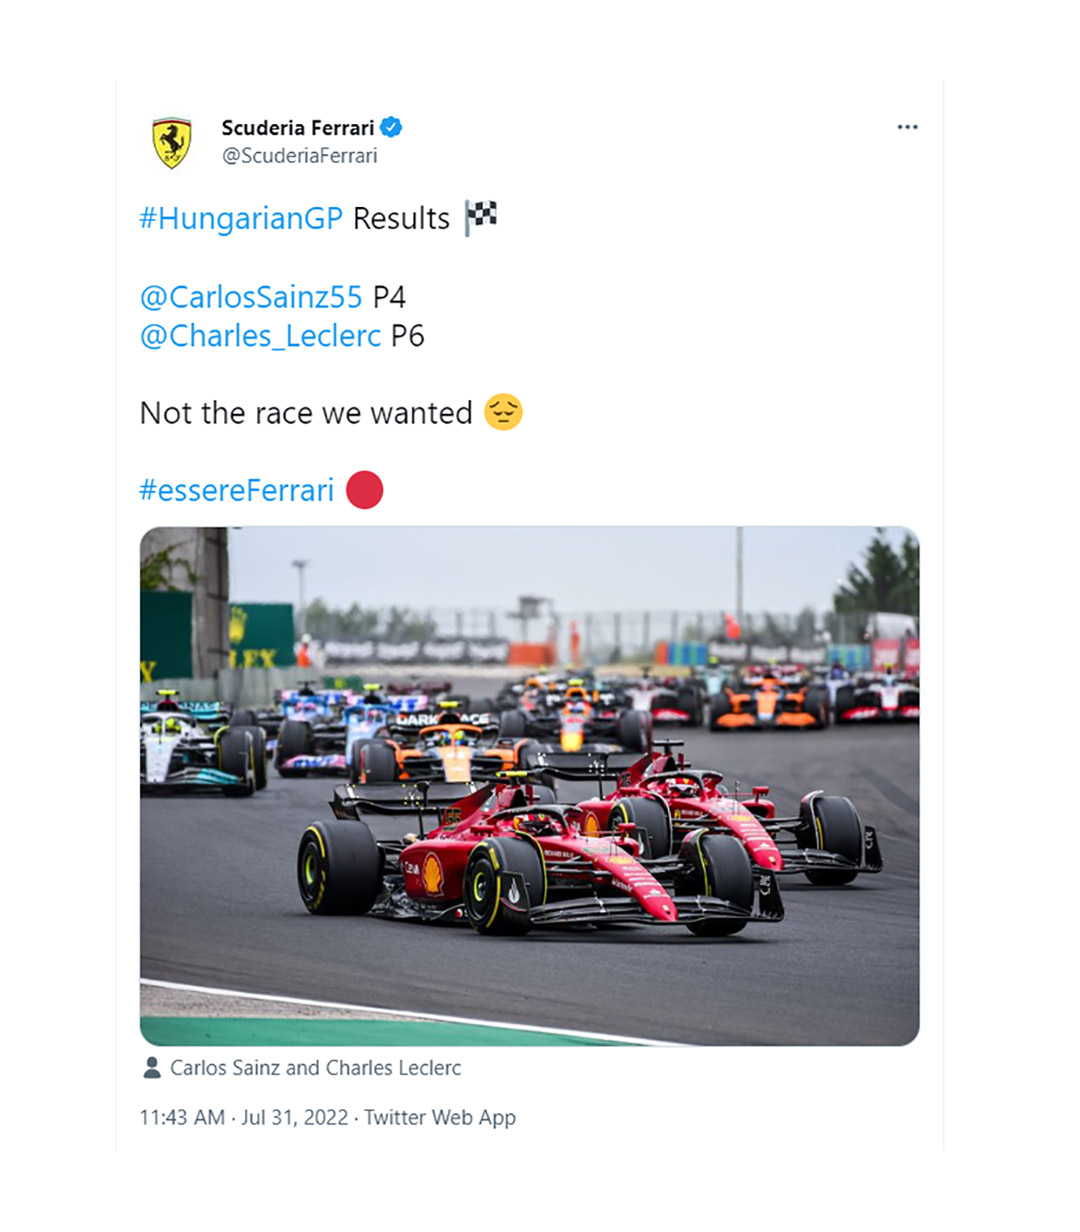 "No fue la carrera que queríamos", apunta el posteo de Ferrari